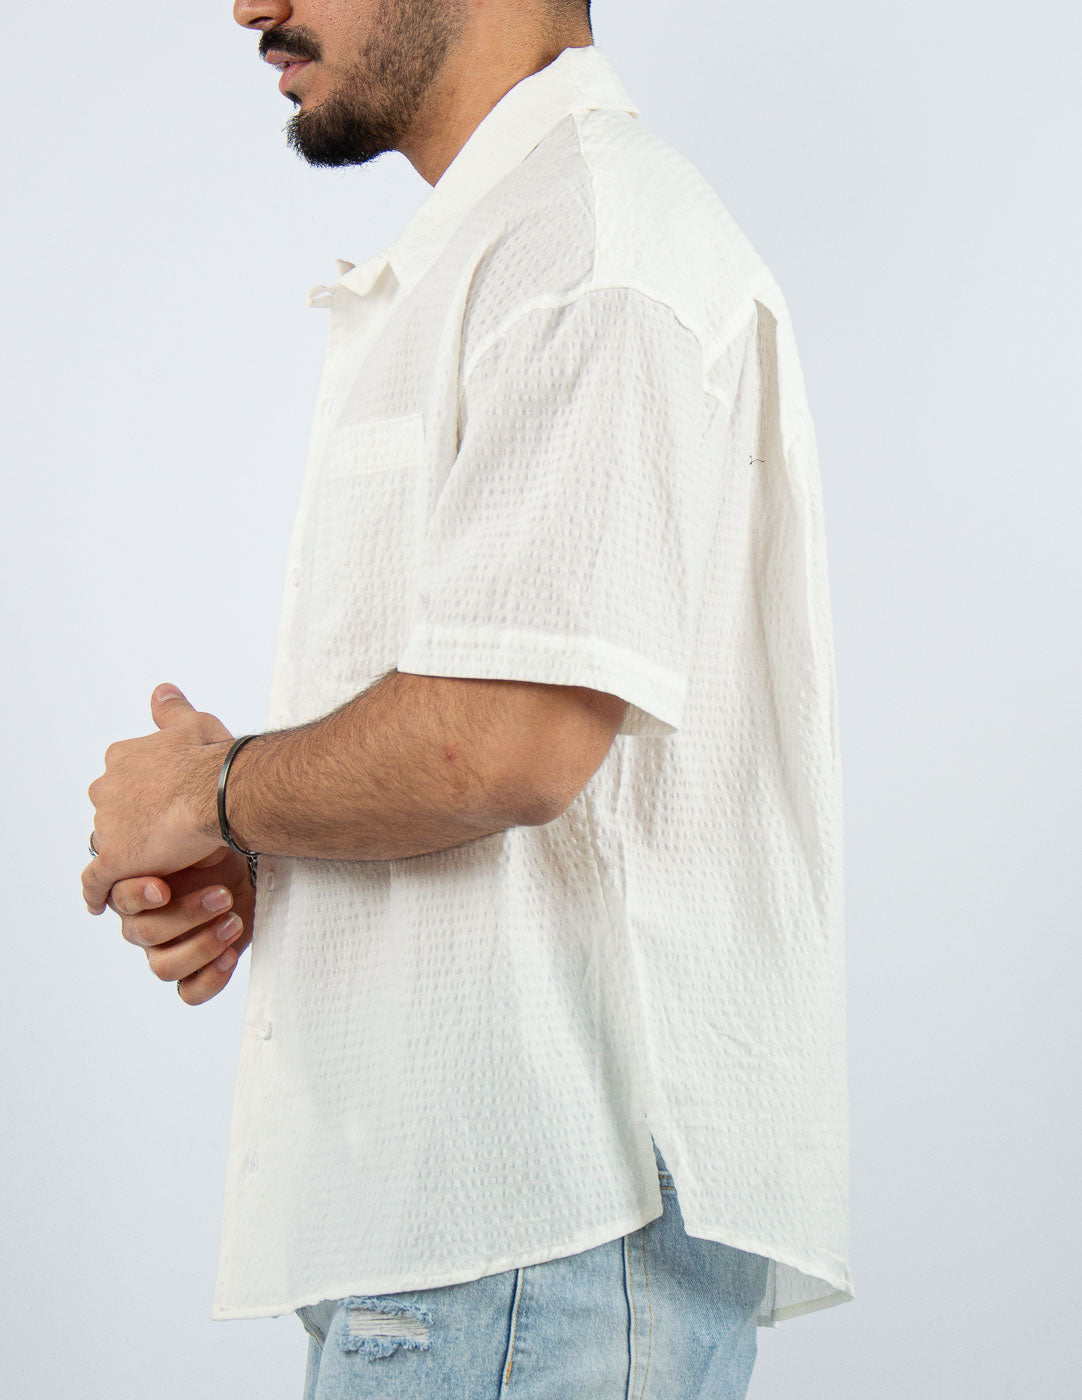 camicia uomo manica corta strutturata